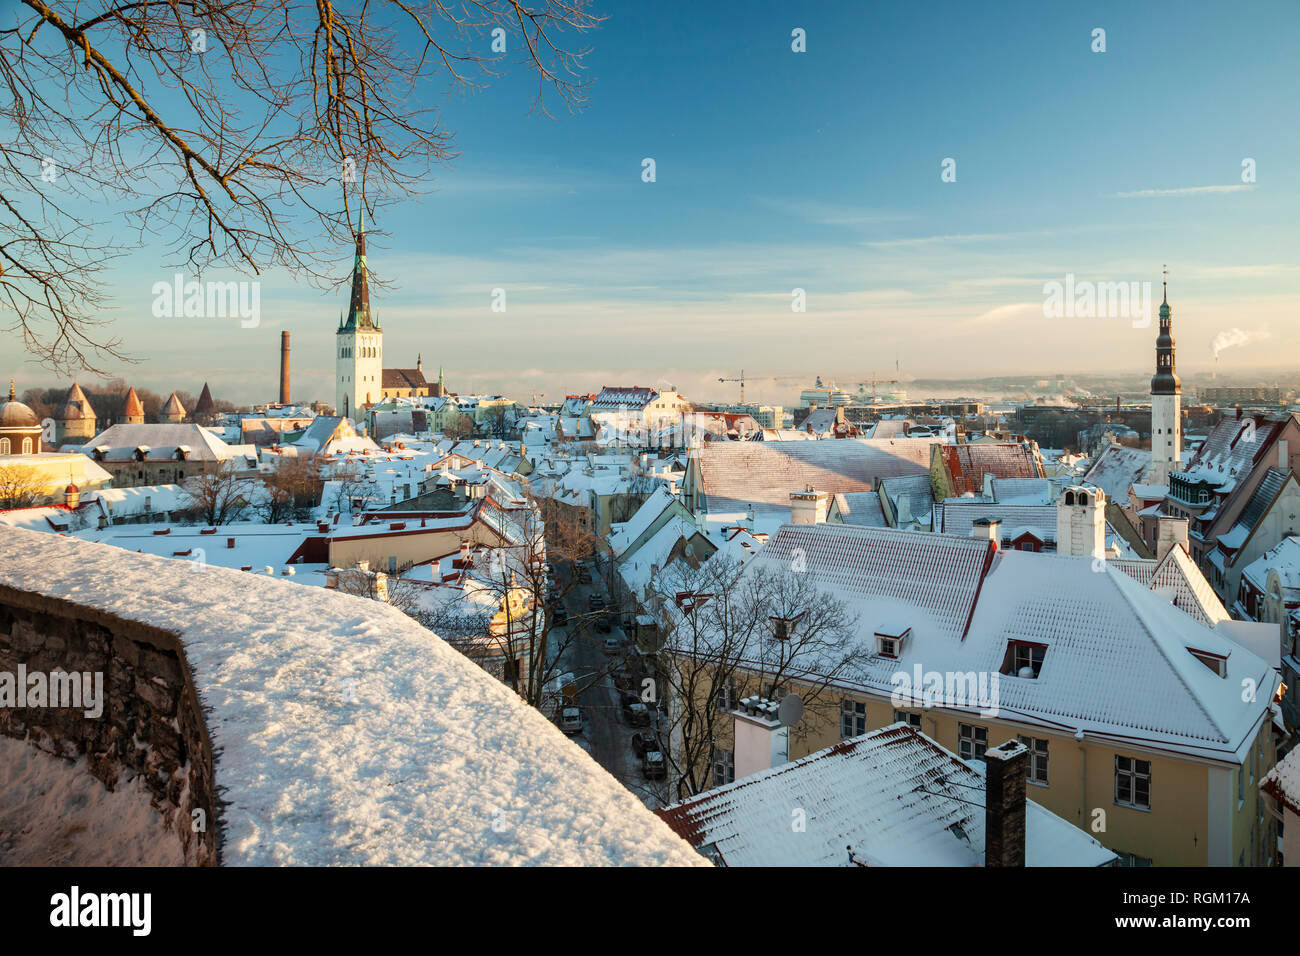 Winter morning in Tallinn old town, Estonia. Stock Photo